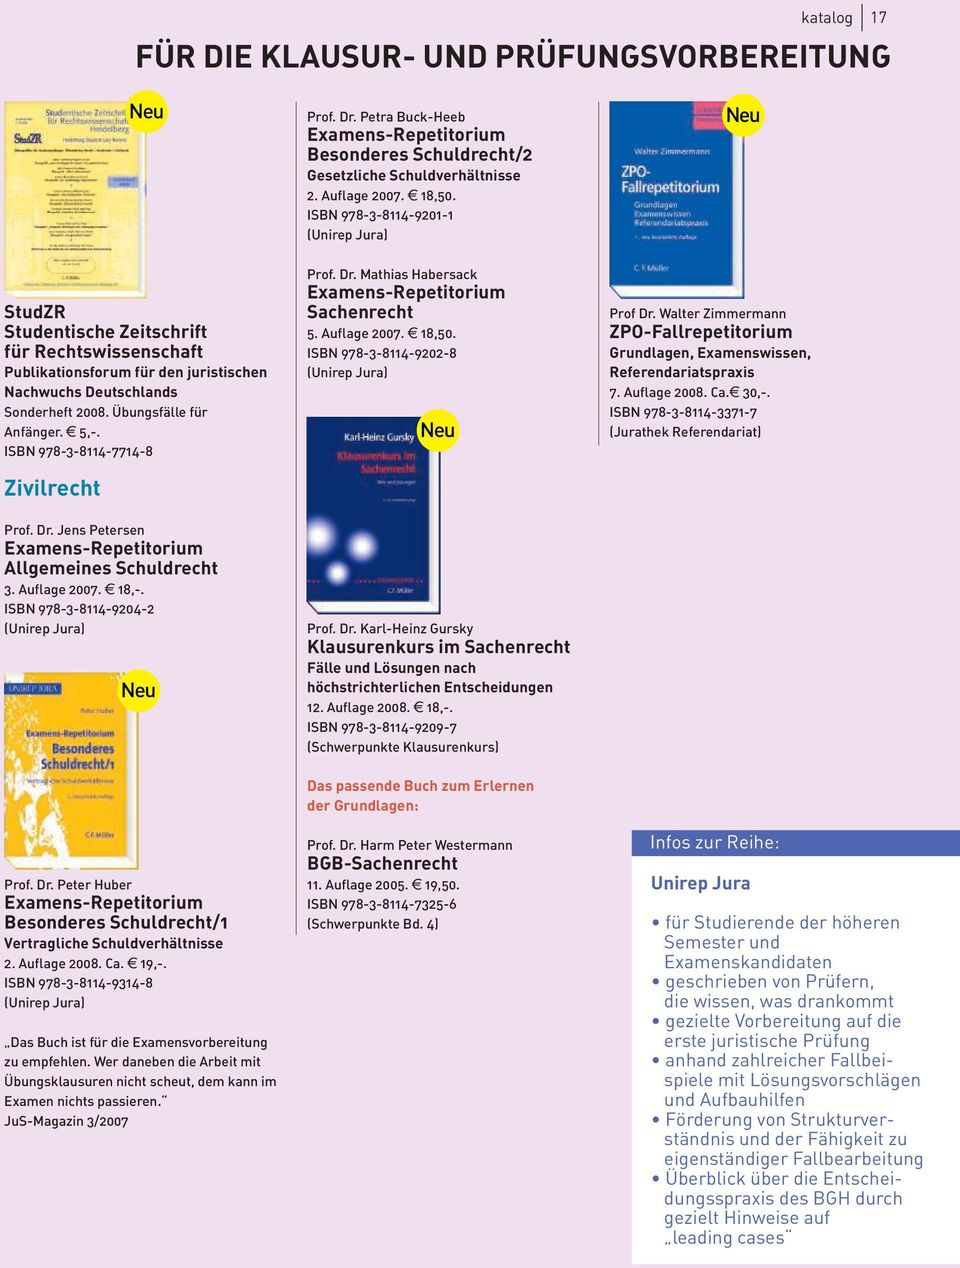 ISBN 978-3-8114-9204-2 (Unirep Jura) Prof. Dr. Peter Huber Examens-Repetitorium Besonderes Schuldrecht/1 Vertragliche Schuldverhältnisse 2. Auflage 2008. Ca. e 19,-.